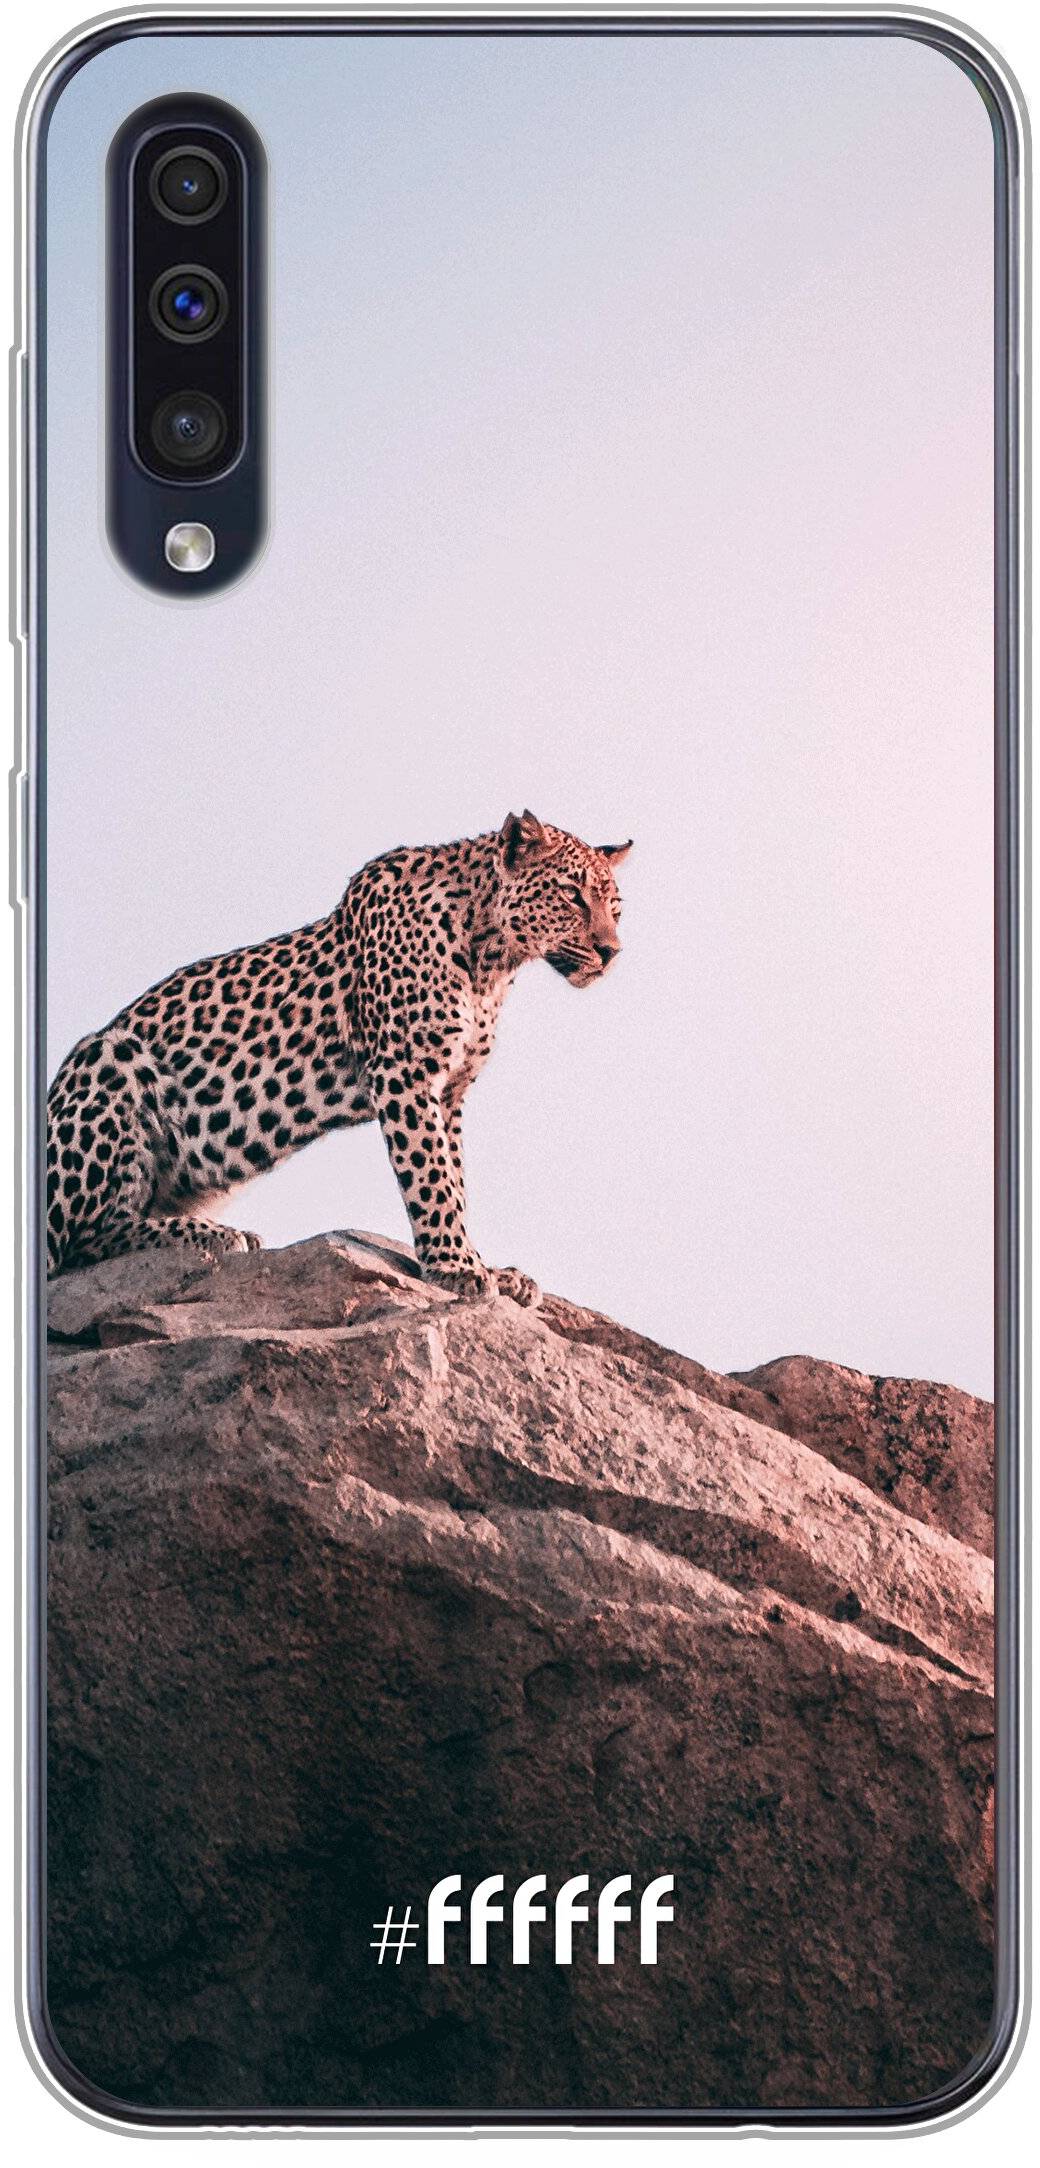 Leopard Galaxy A50s